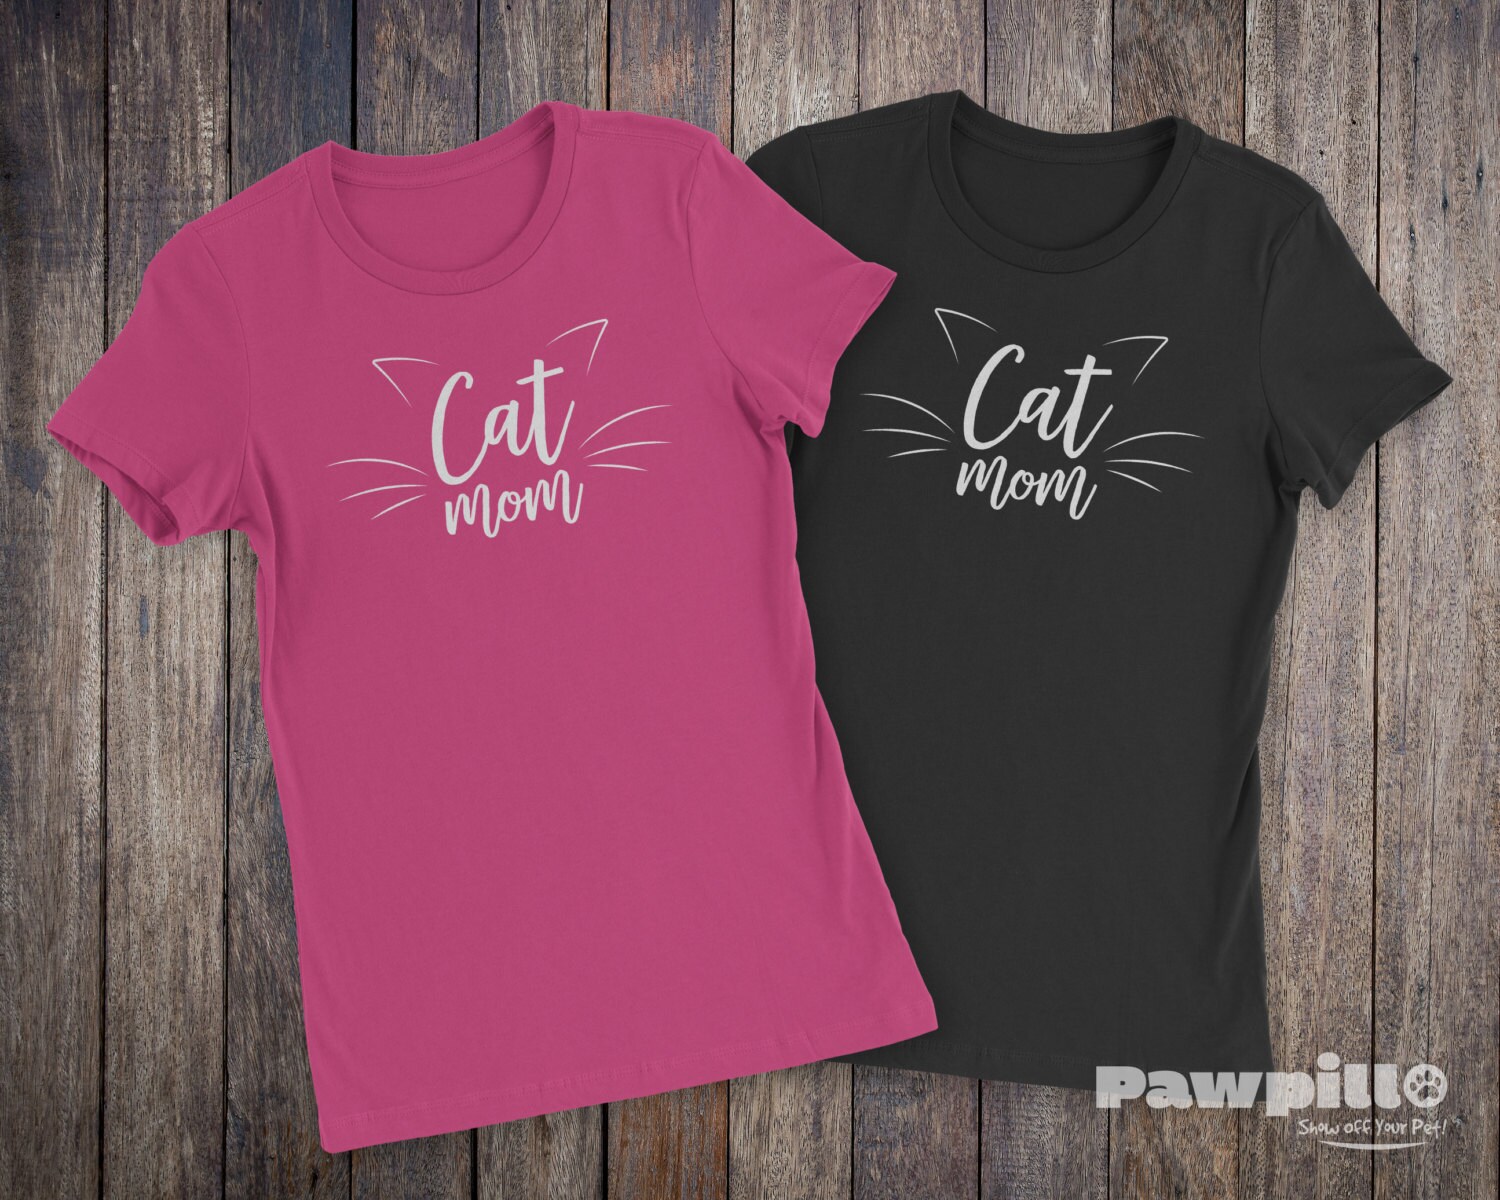 Cat Mom T-Shirt - Pet Shirts - Pet T-shirts - Pet Lover Shirt - Cat ...